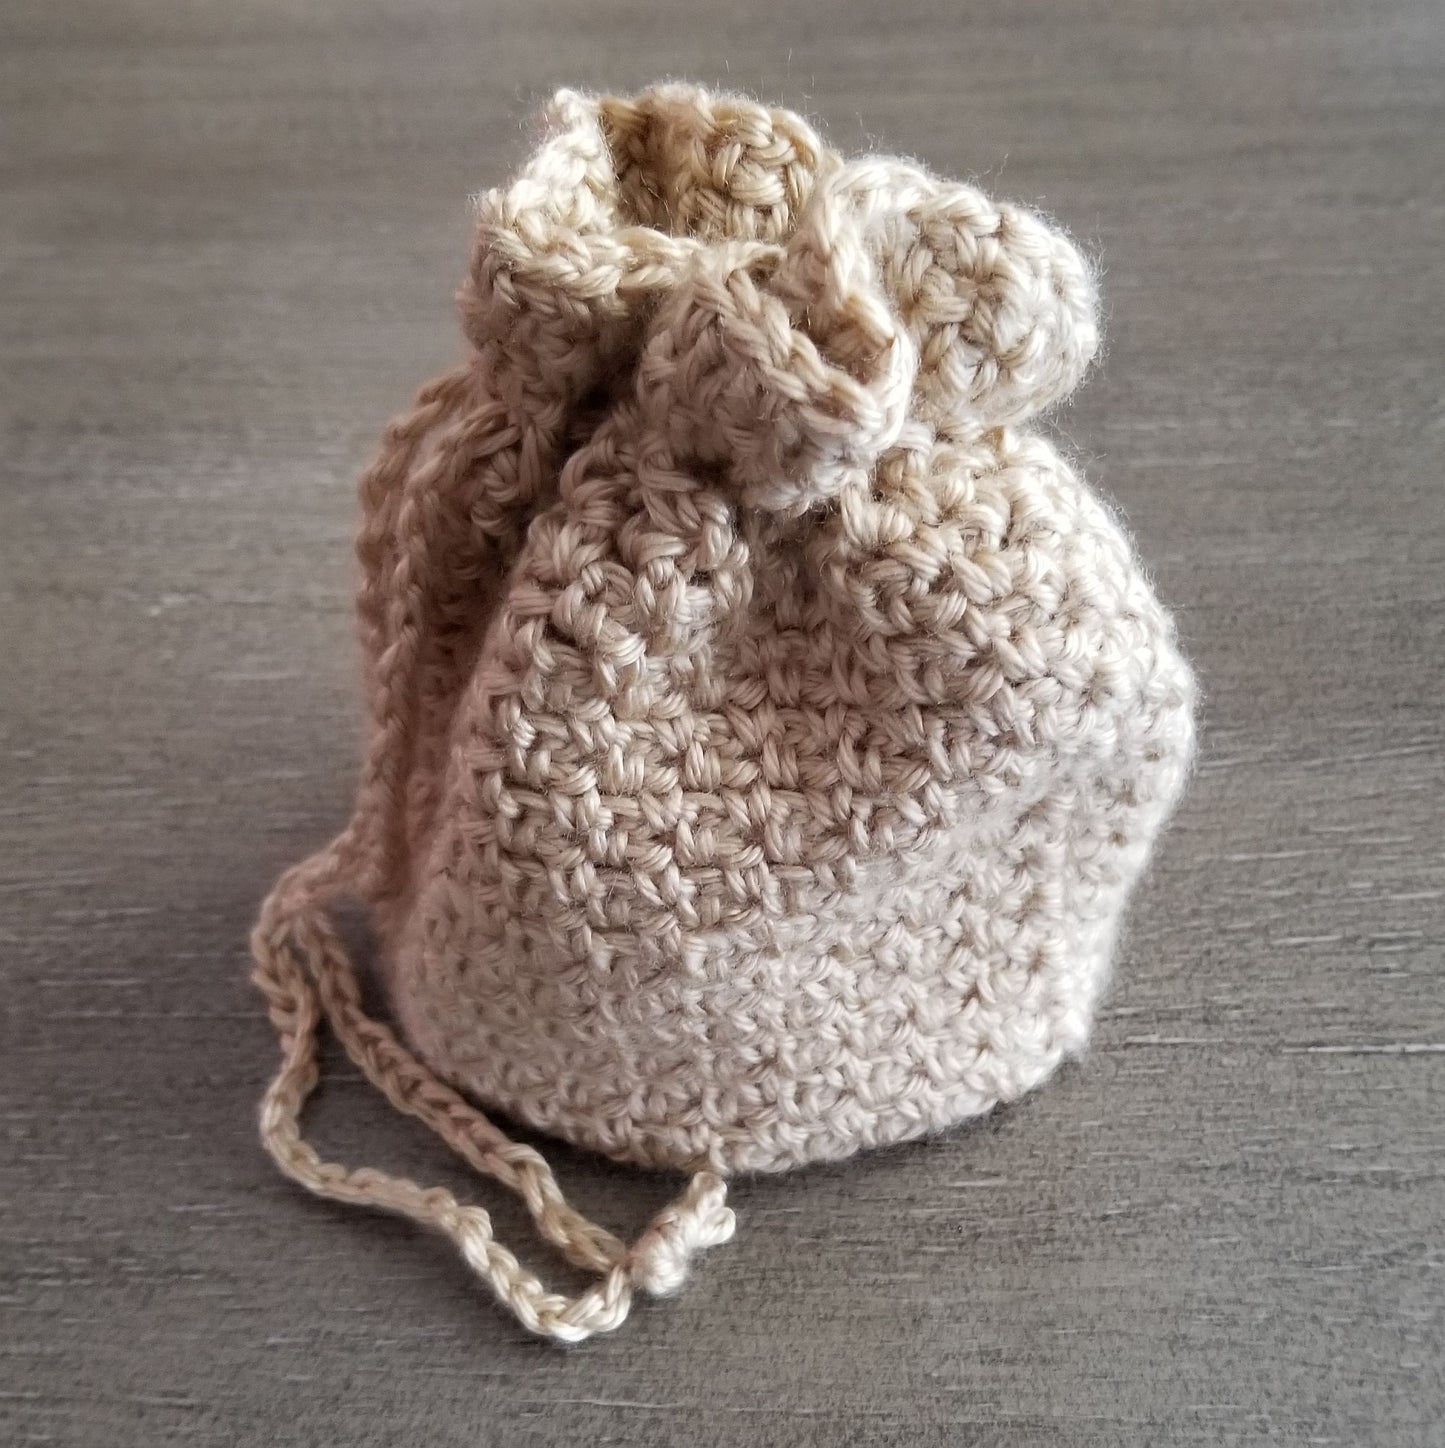 Woven Drawstring Bag Crochet Pattern PDF